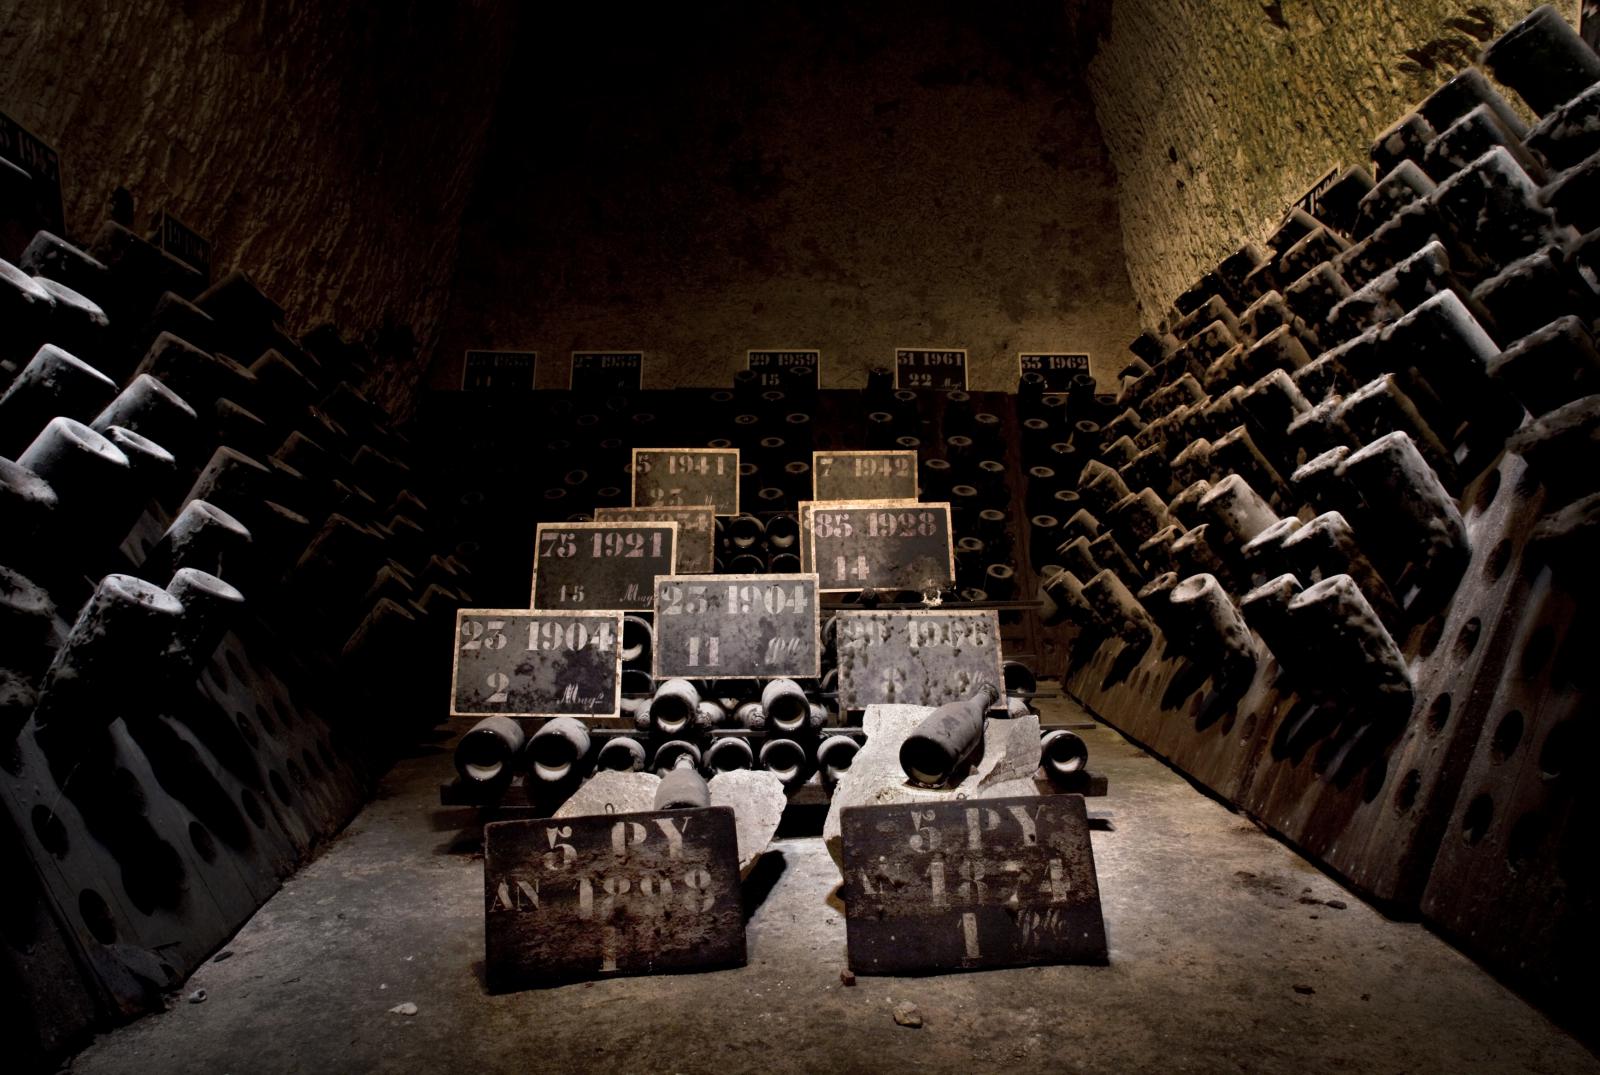 Visit the Moët & Chandon underground wine cellars in Champagne